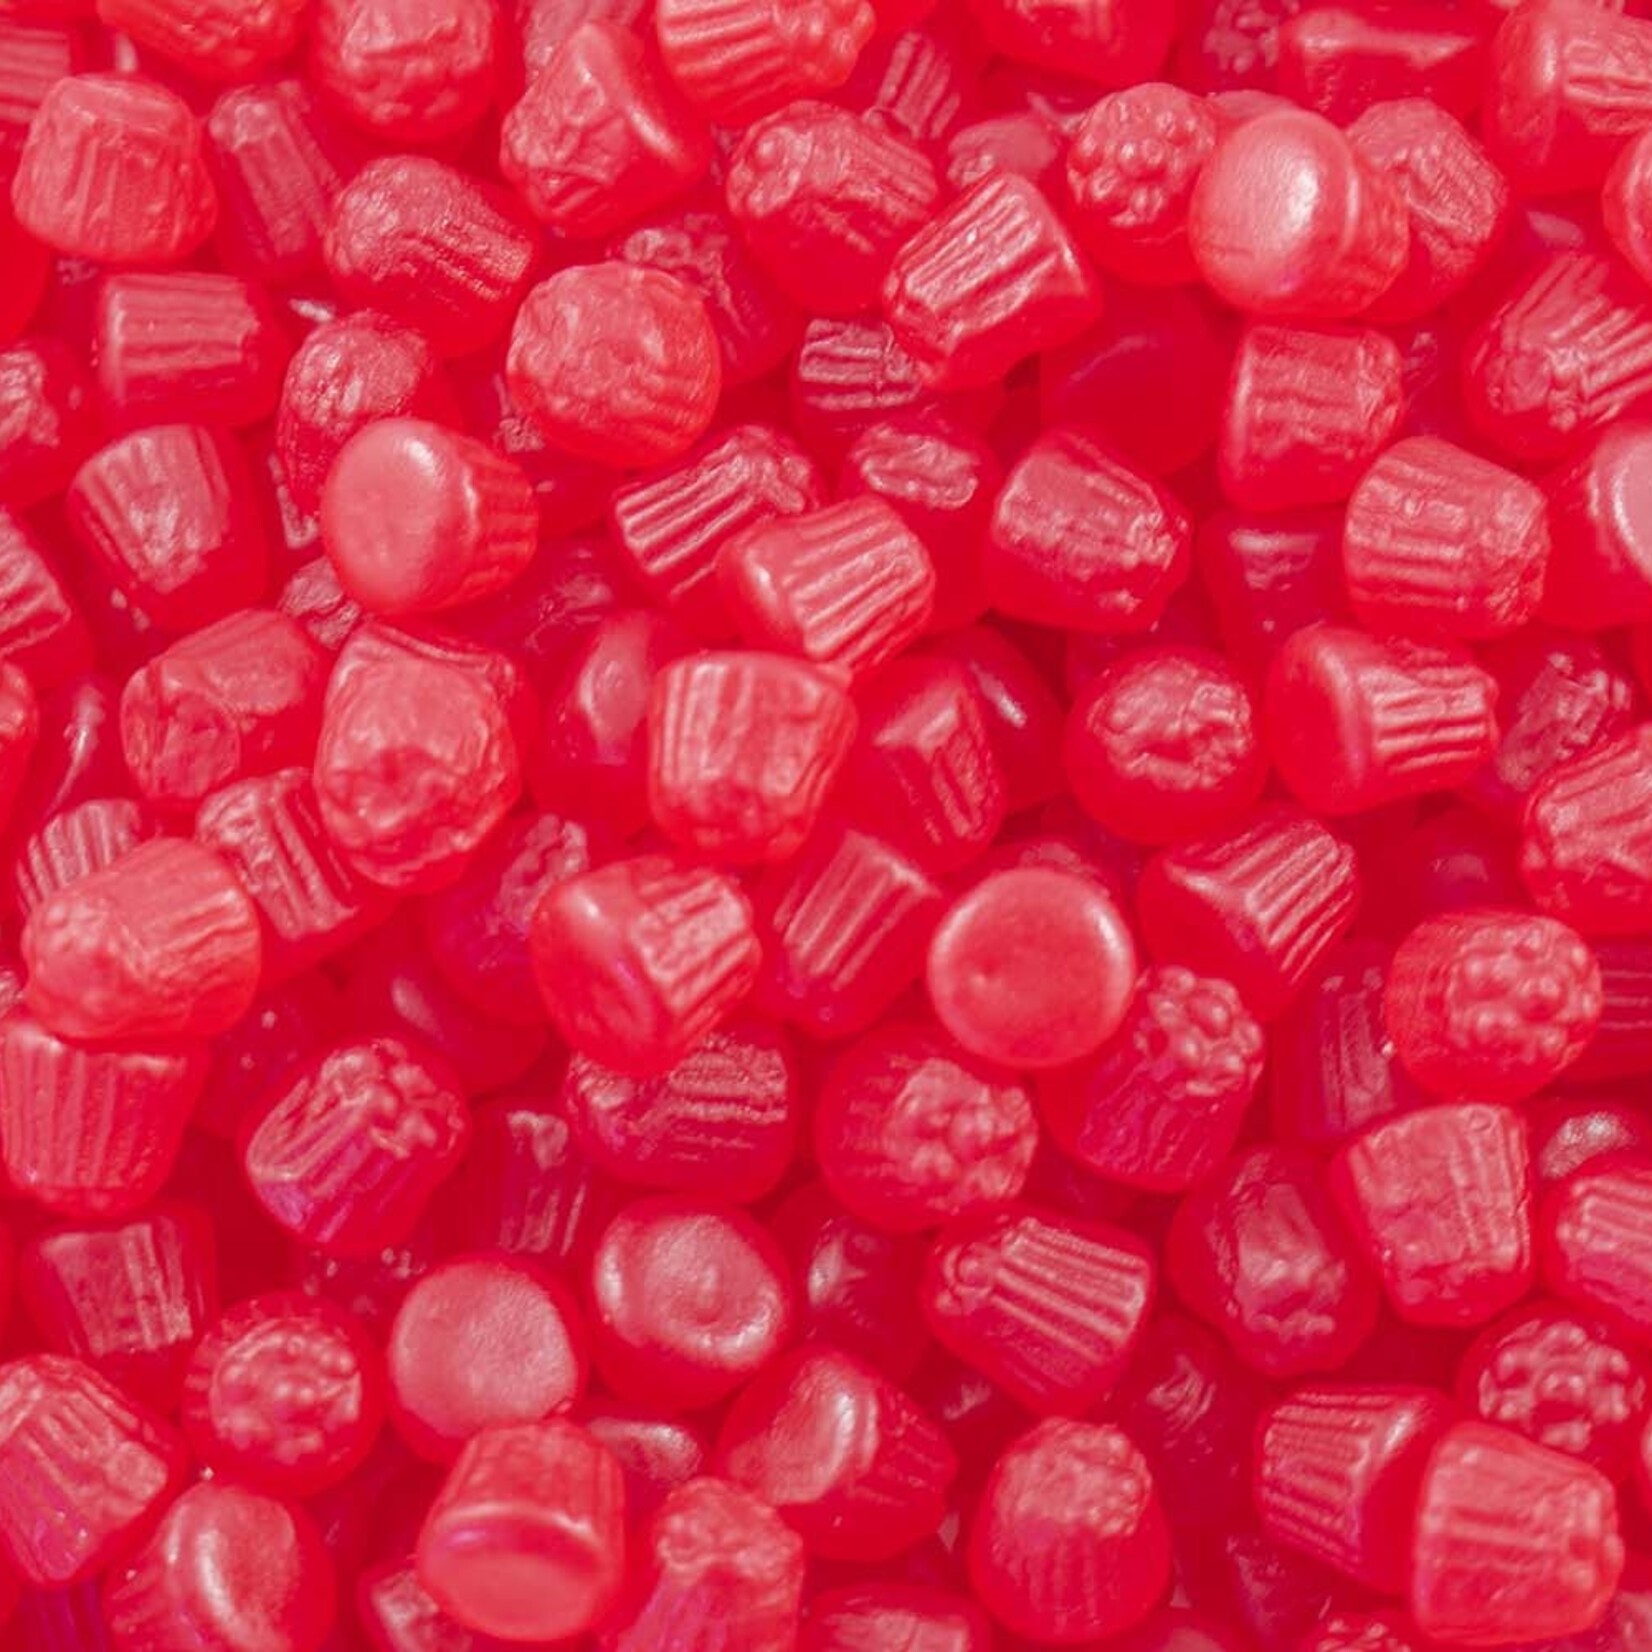 Mini Raspberries